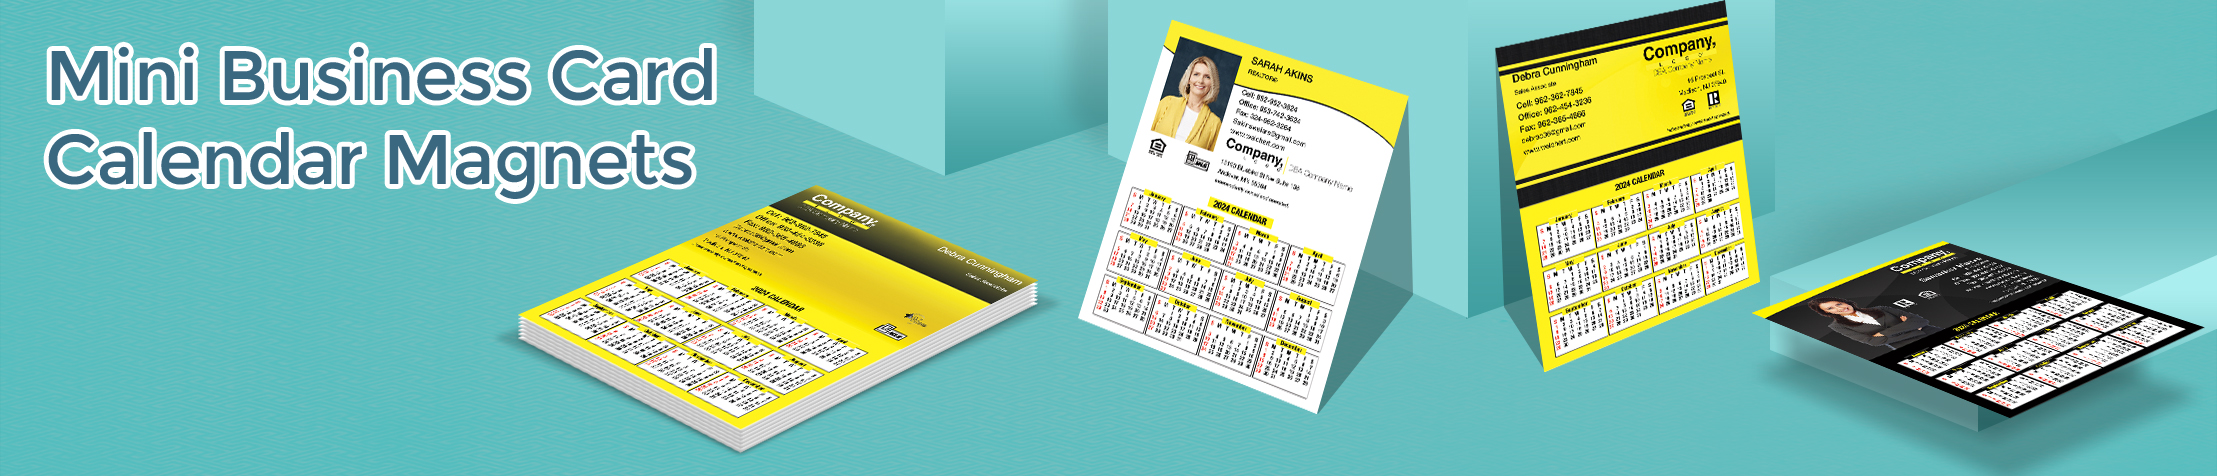 Weichert Real Estate Mini Business Card Calendar Magnets - Weichert  personalized marketing materials | BestPrintBuy.com